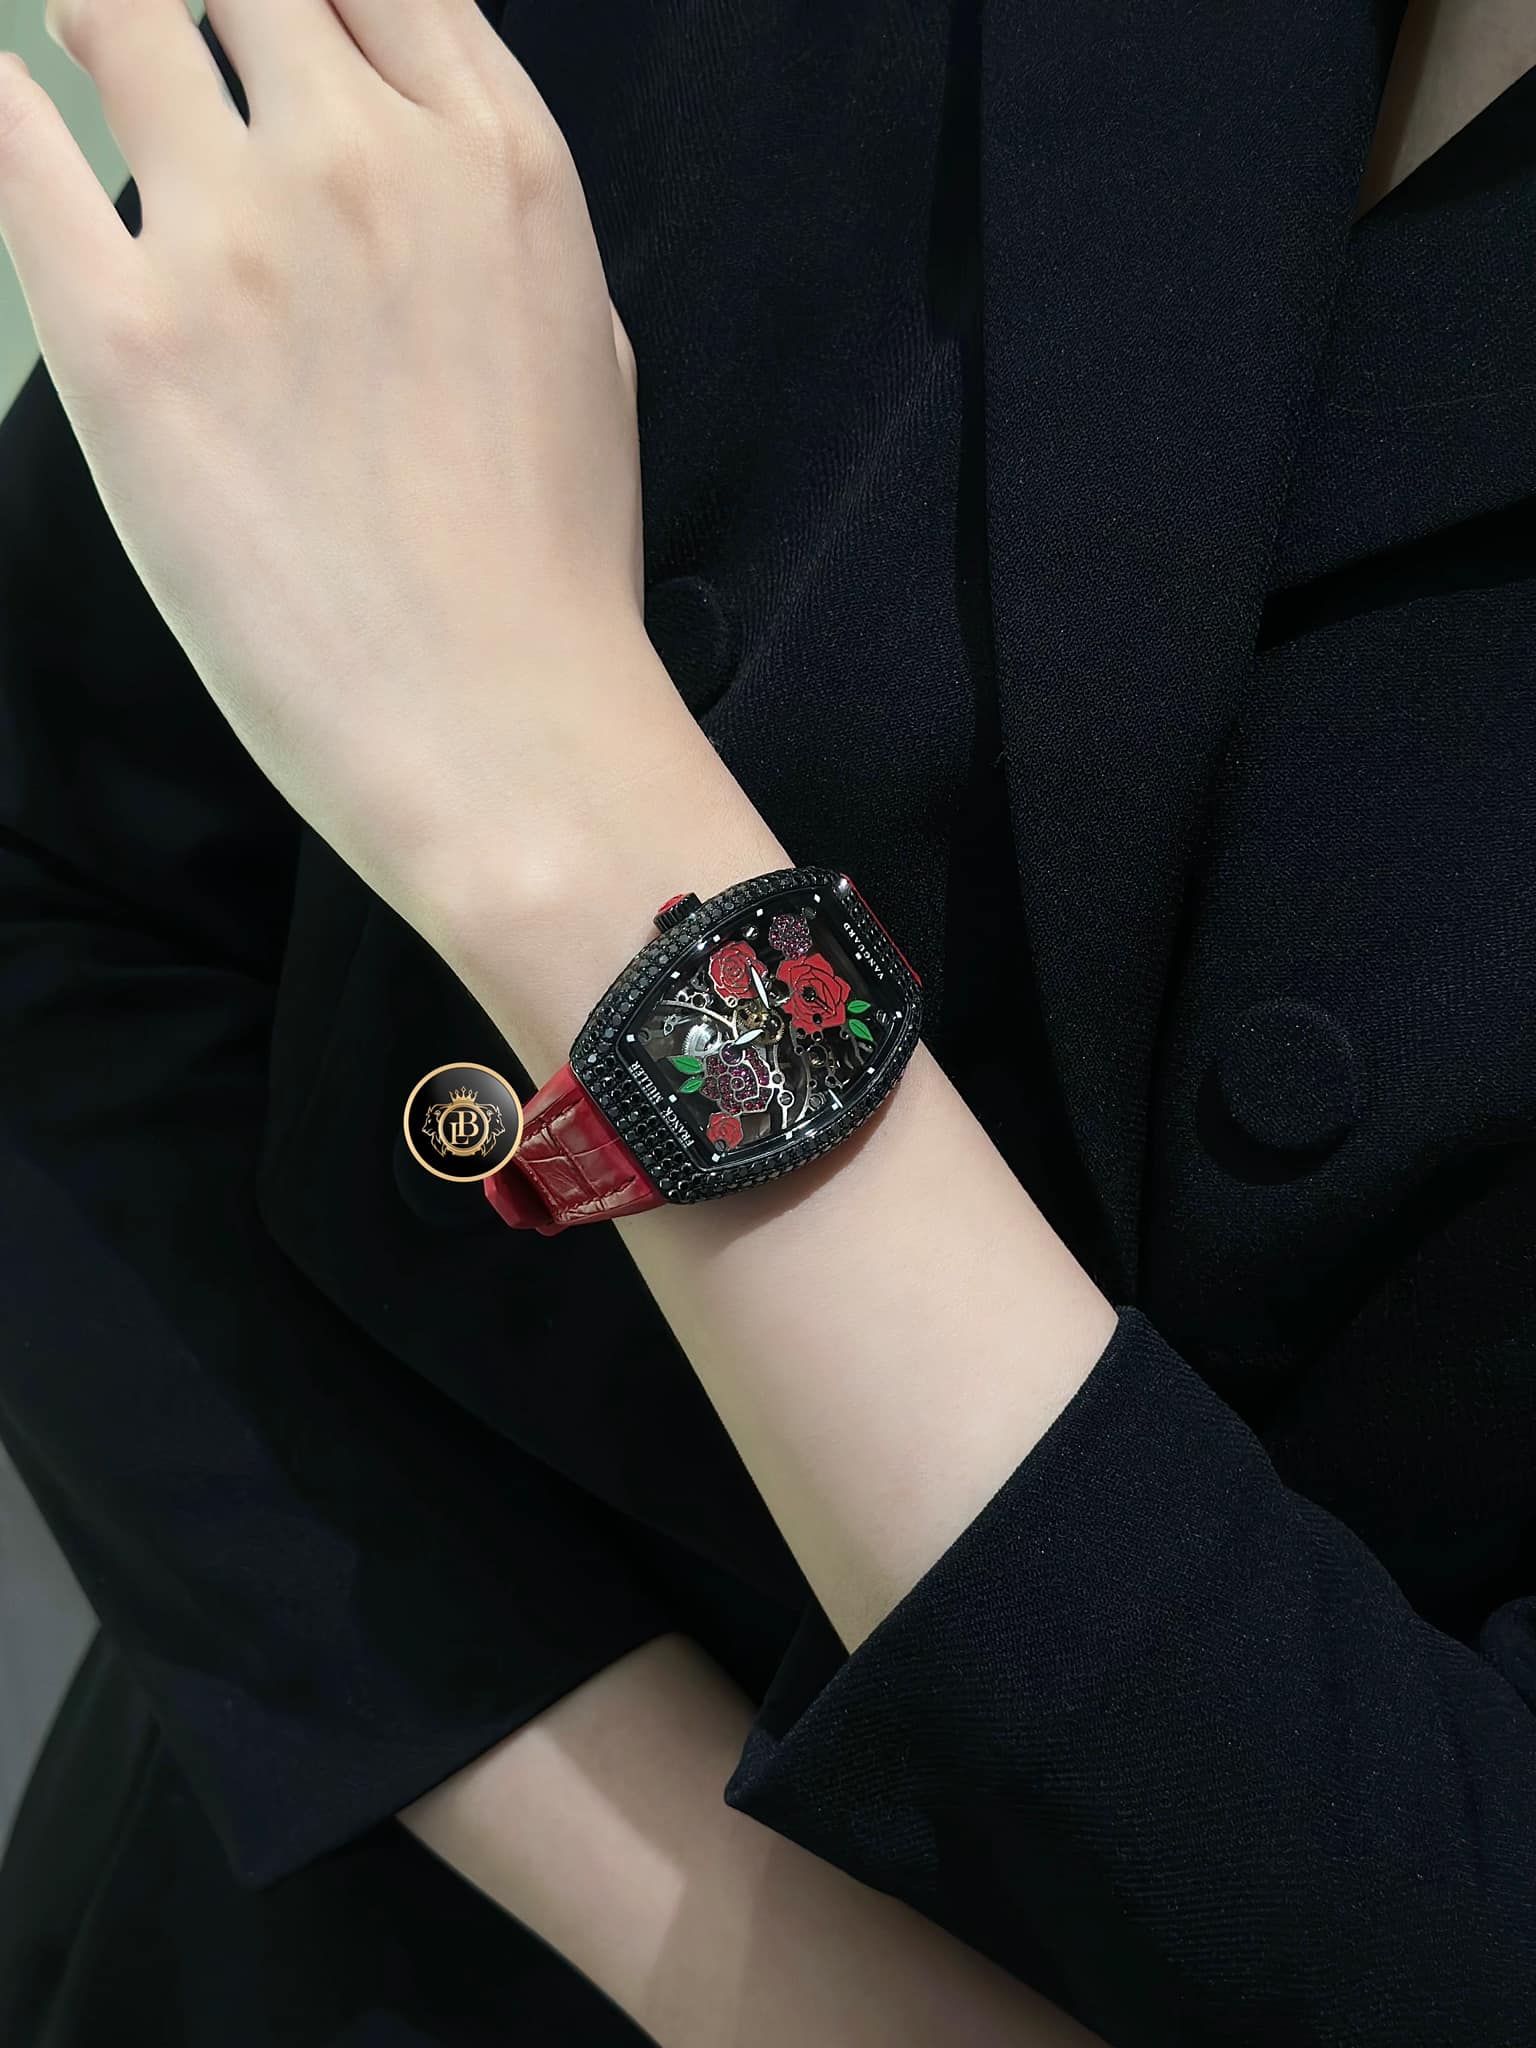 Mê mẩn phiên bản “Những cánh hoa” của chiếc đồng hồ Franck Muller trên cổ tay quý cô